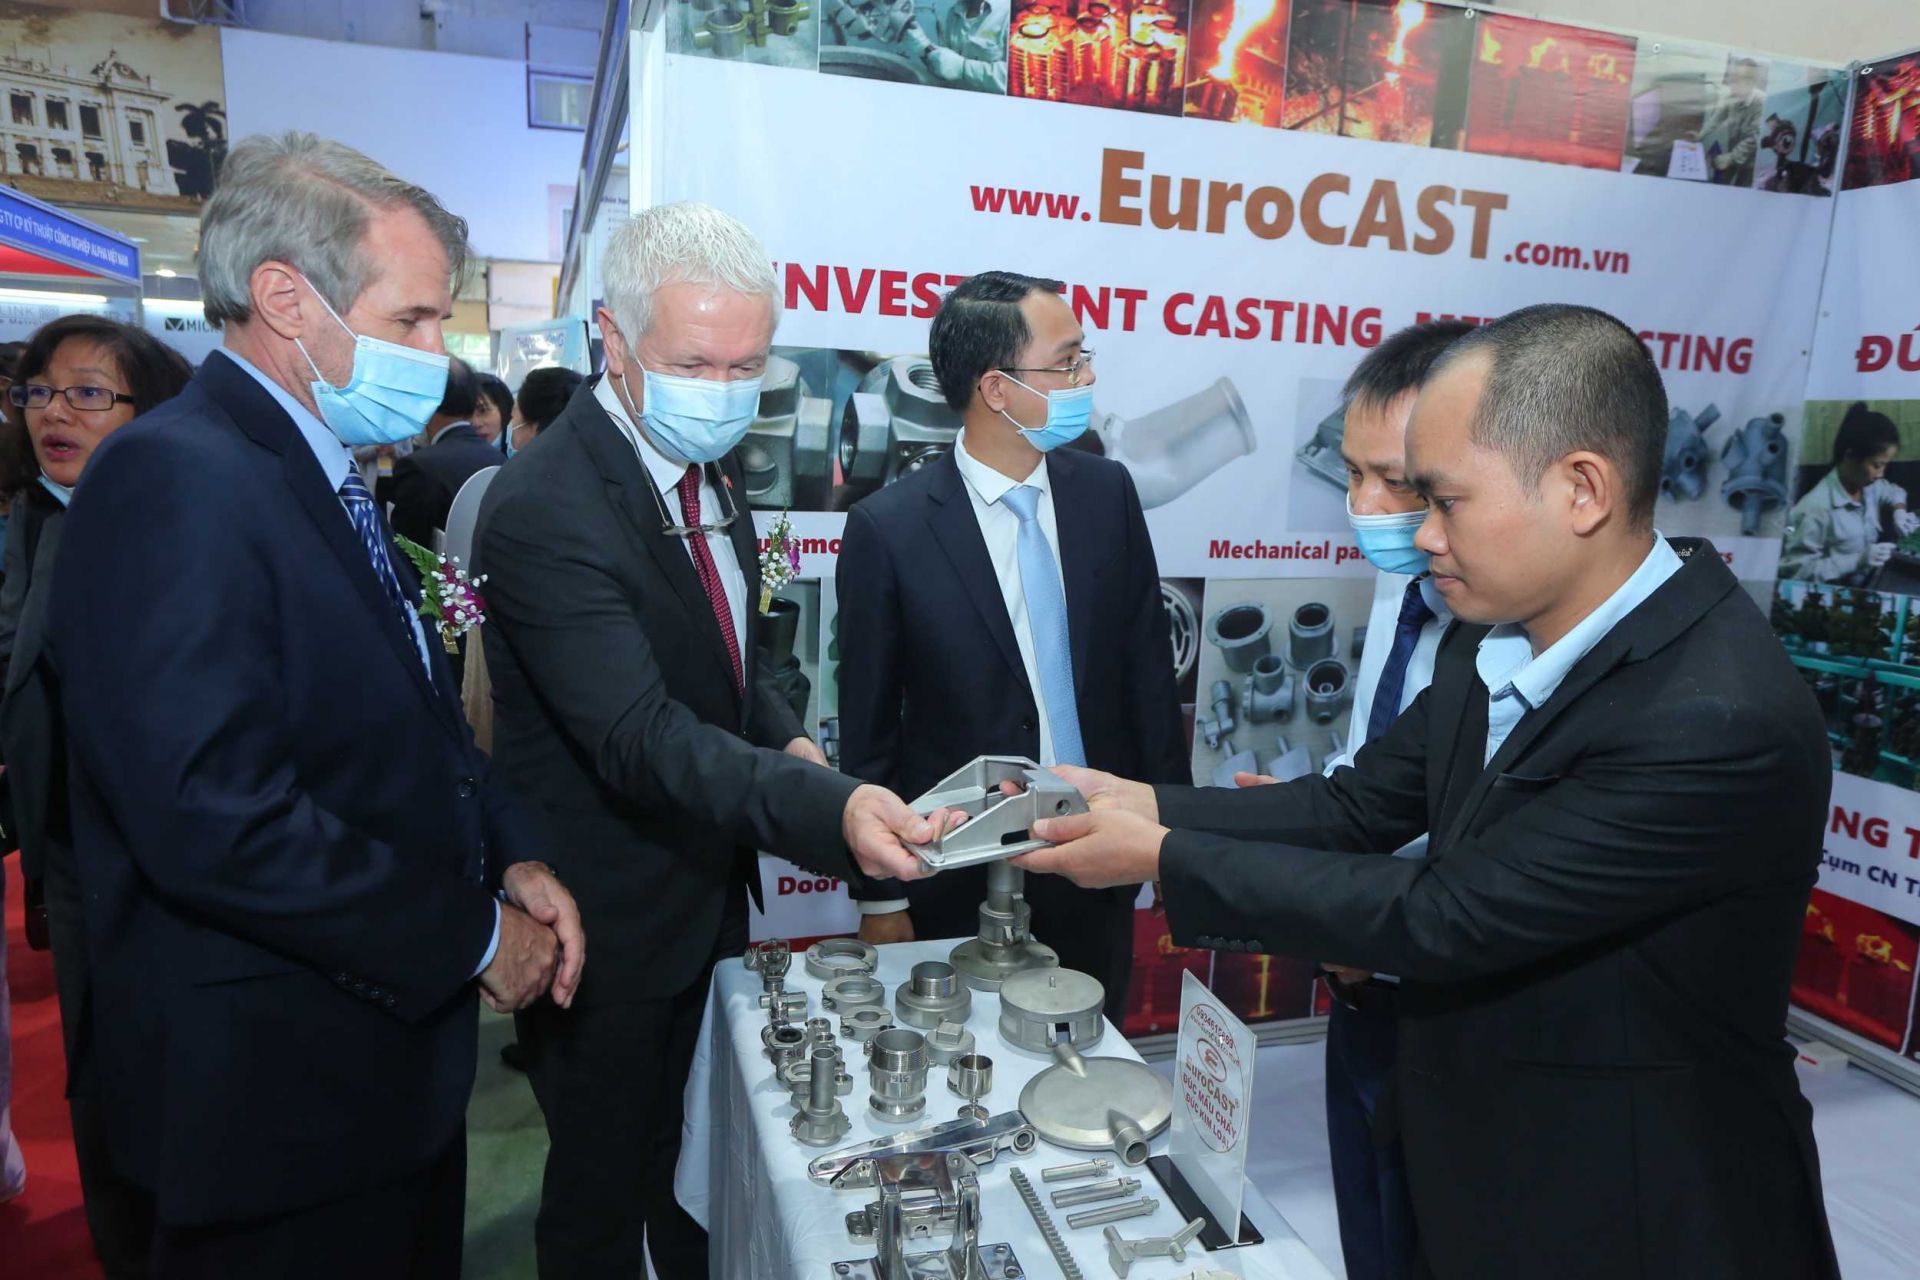 Triển lãm quốc tế lần thứ 2 về công nghiệp hỗ trợ và chế biến chế tạo Việt Nam - VIMEXPO 2020